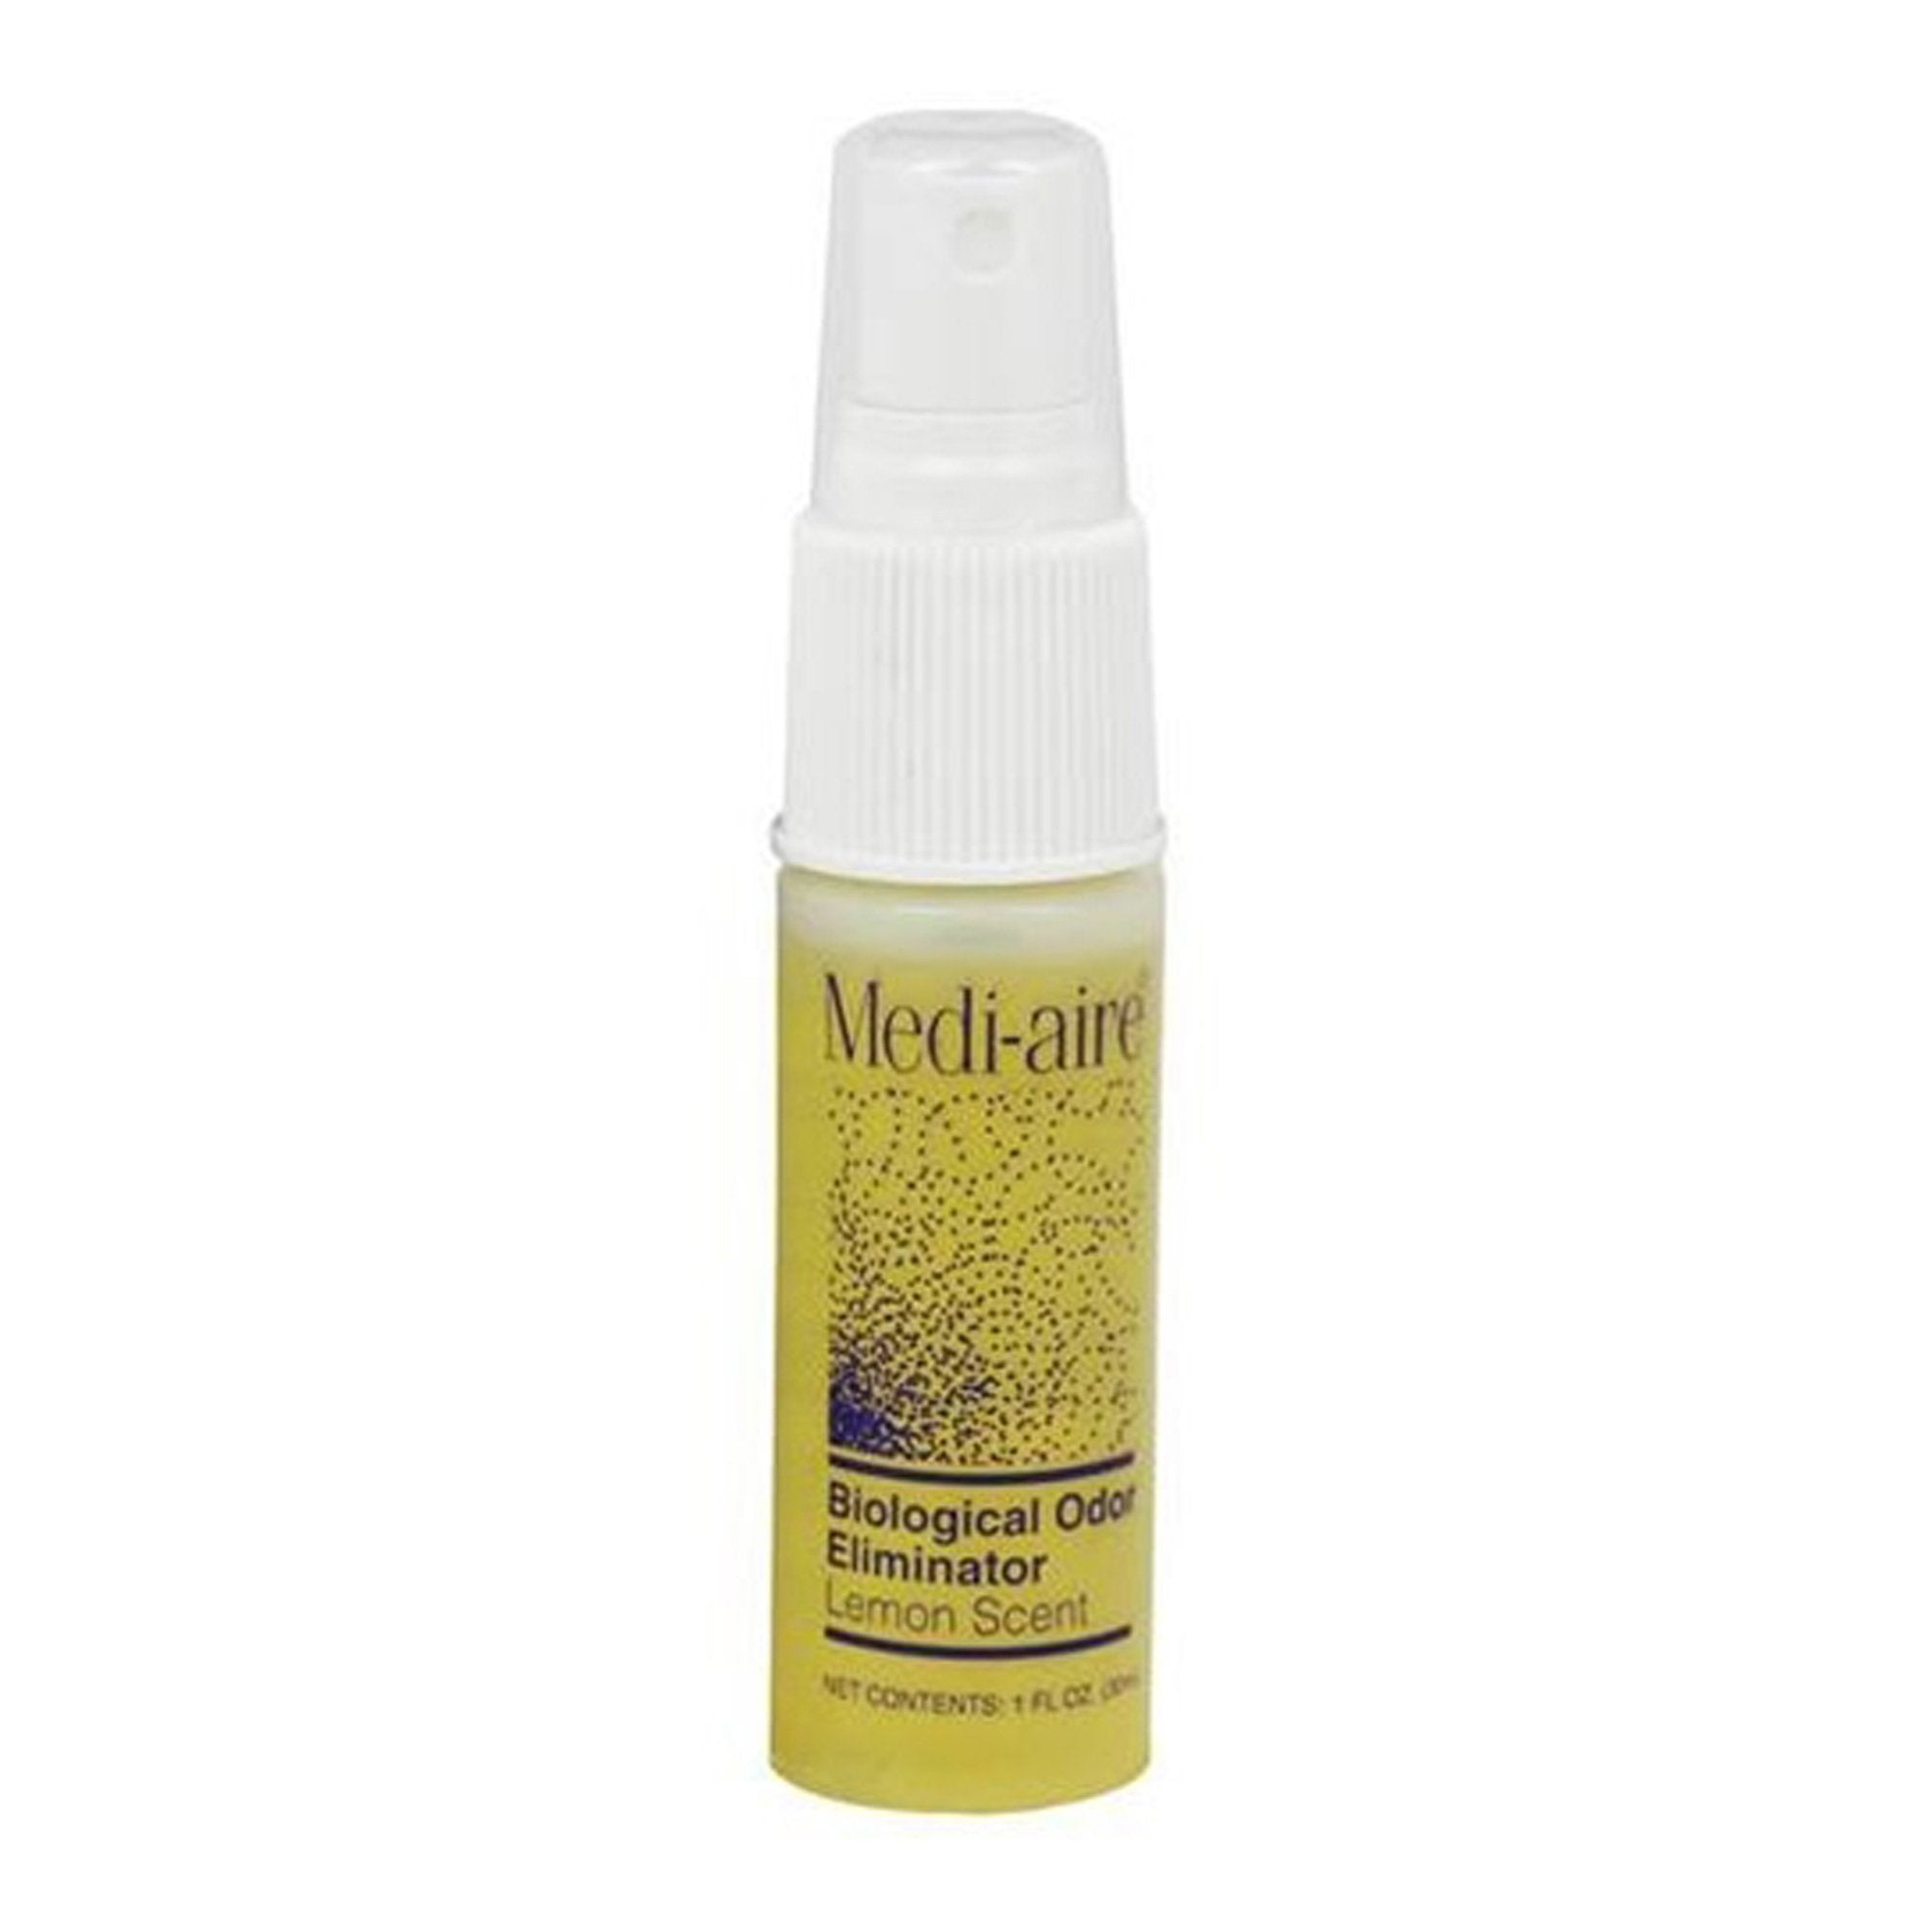 Deodorizer Medi-aire Biological Odor Eliminator Liquid 1 oz. Bottle Lemon Scent